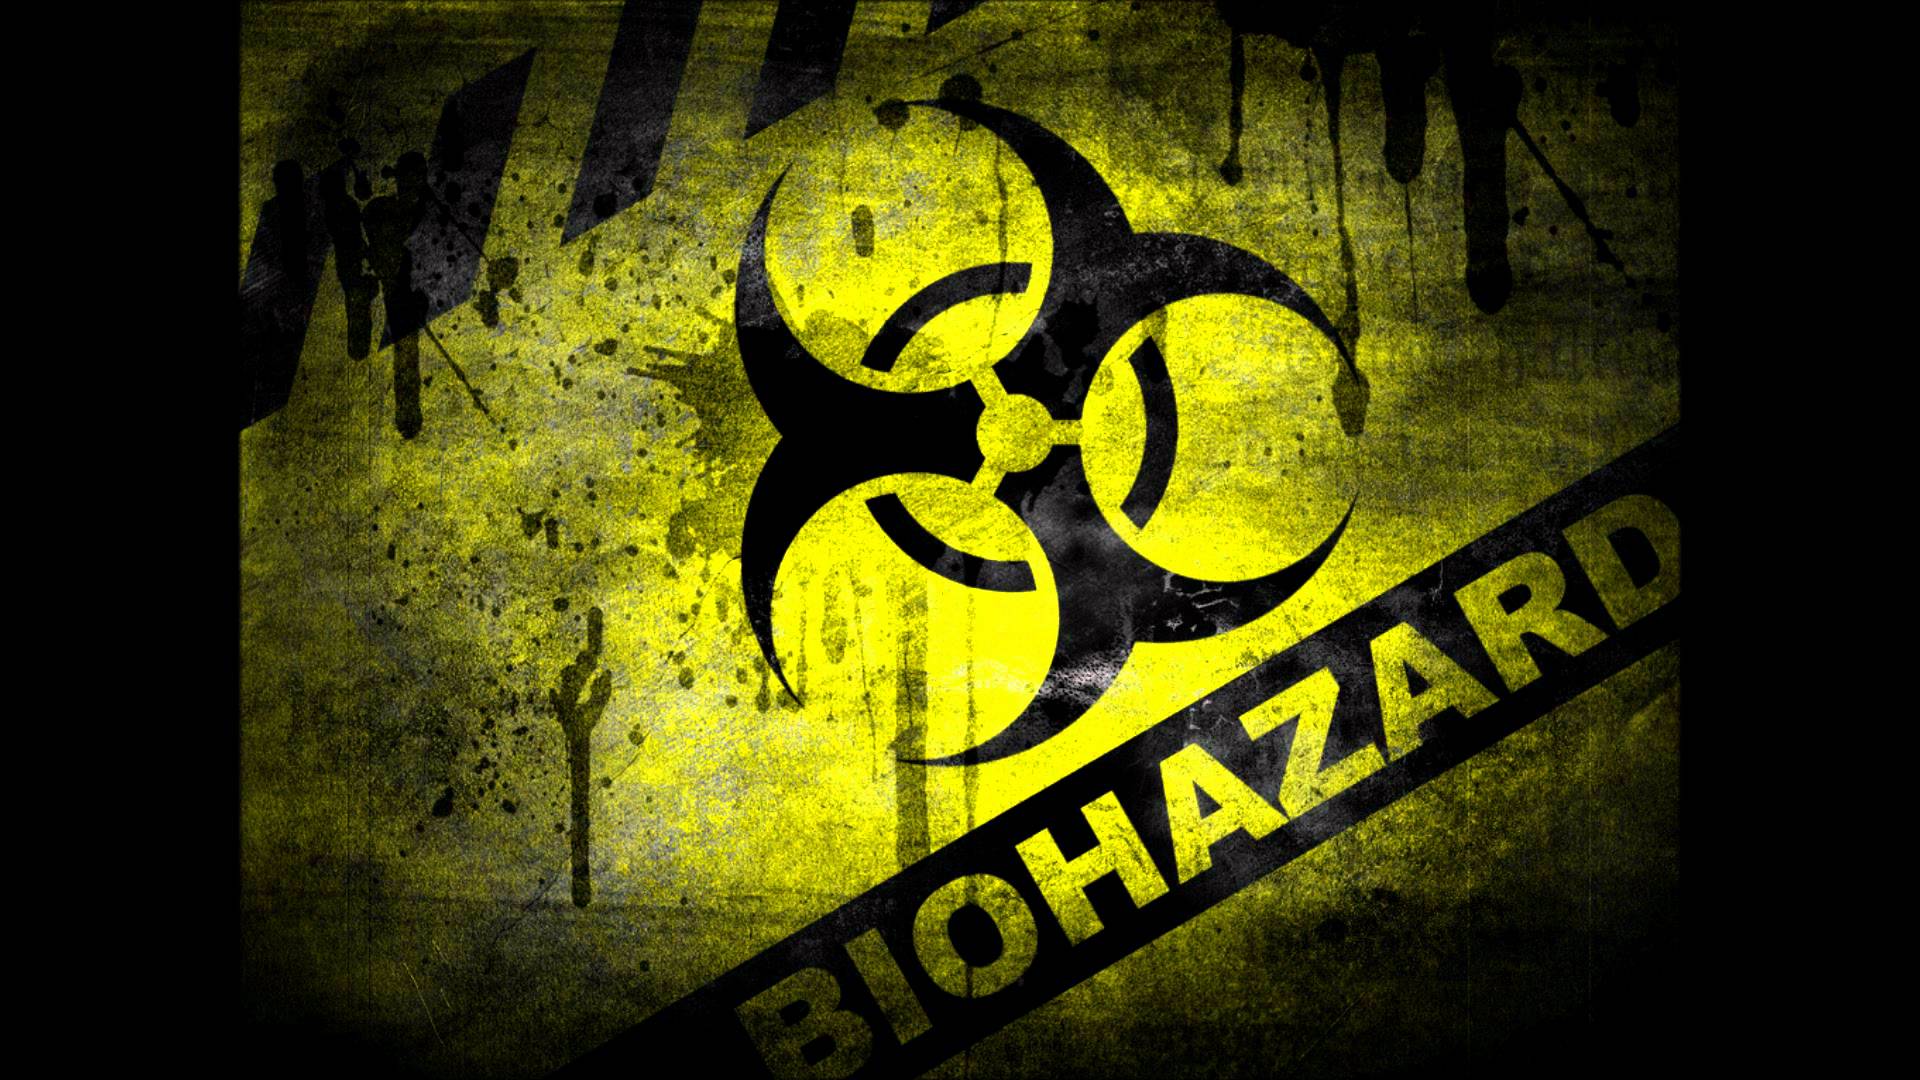 Cool Zombie Biohazard Symbol